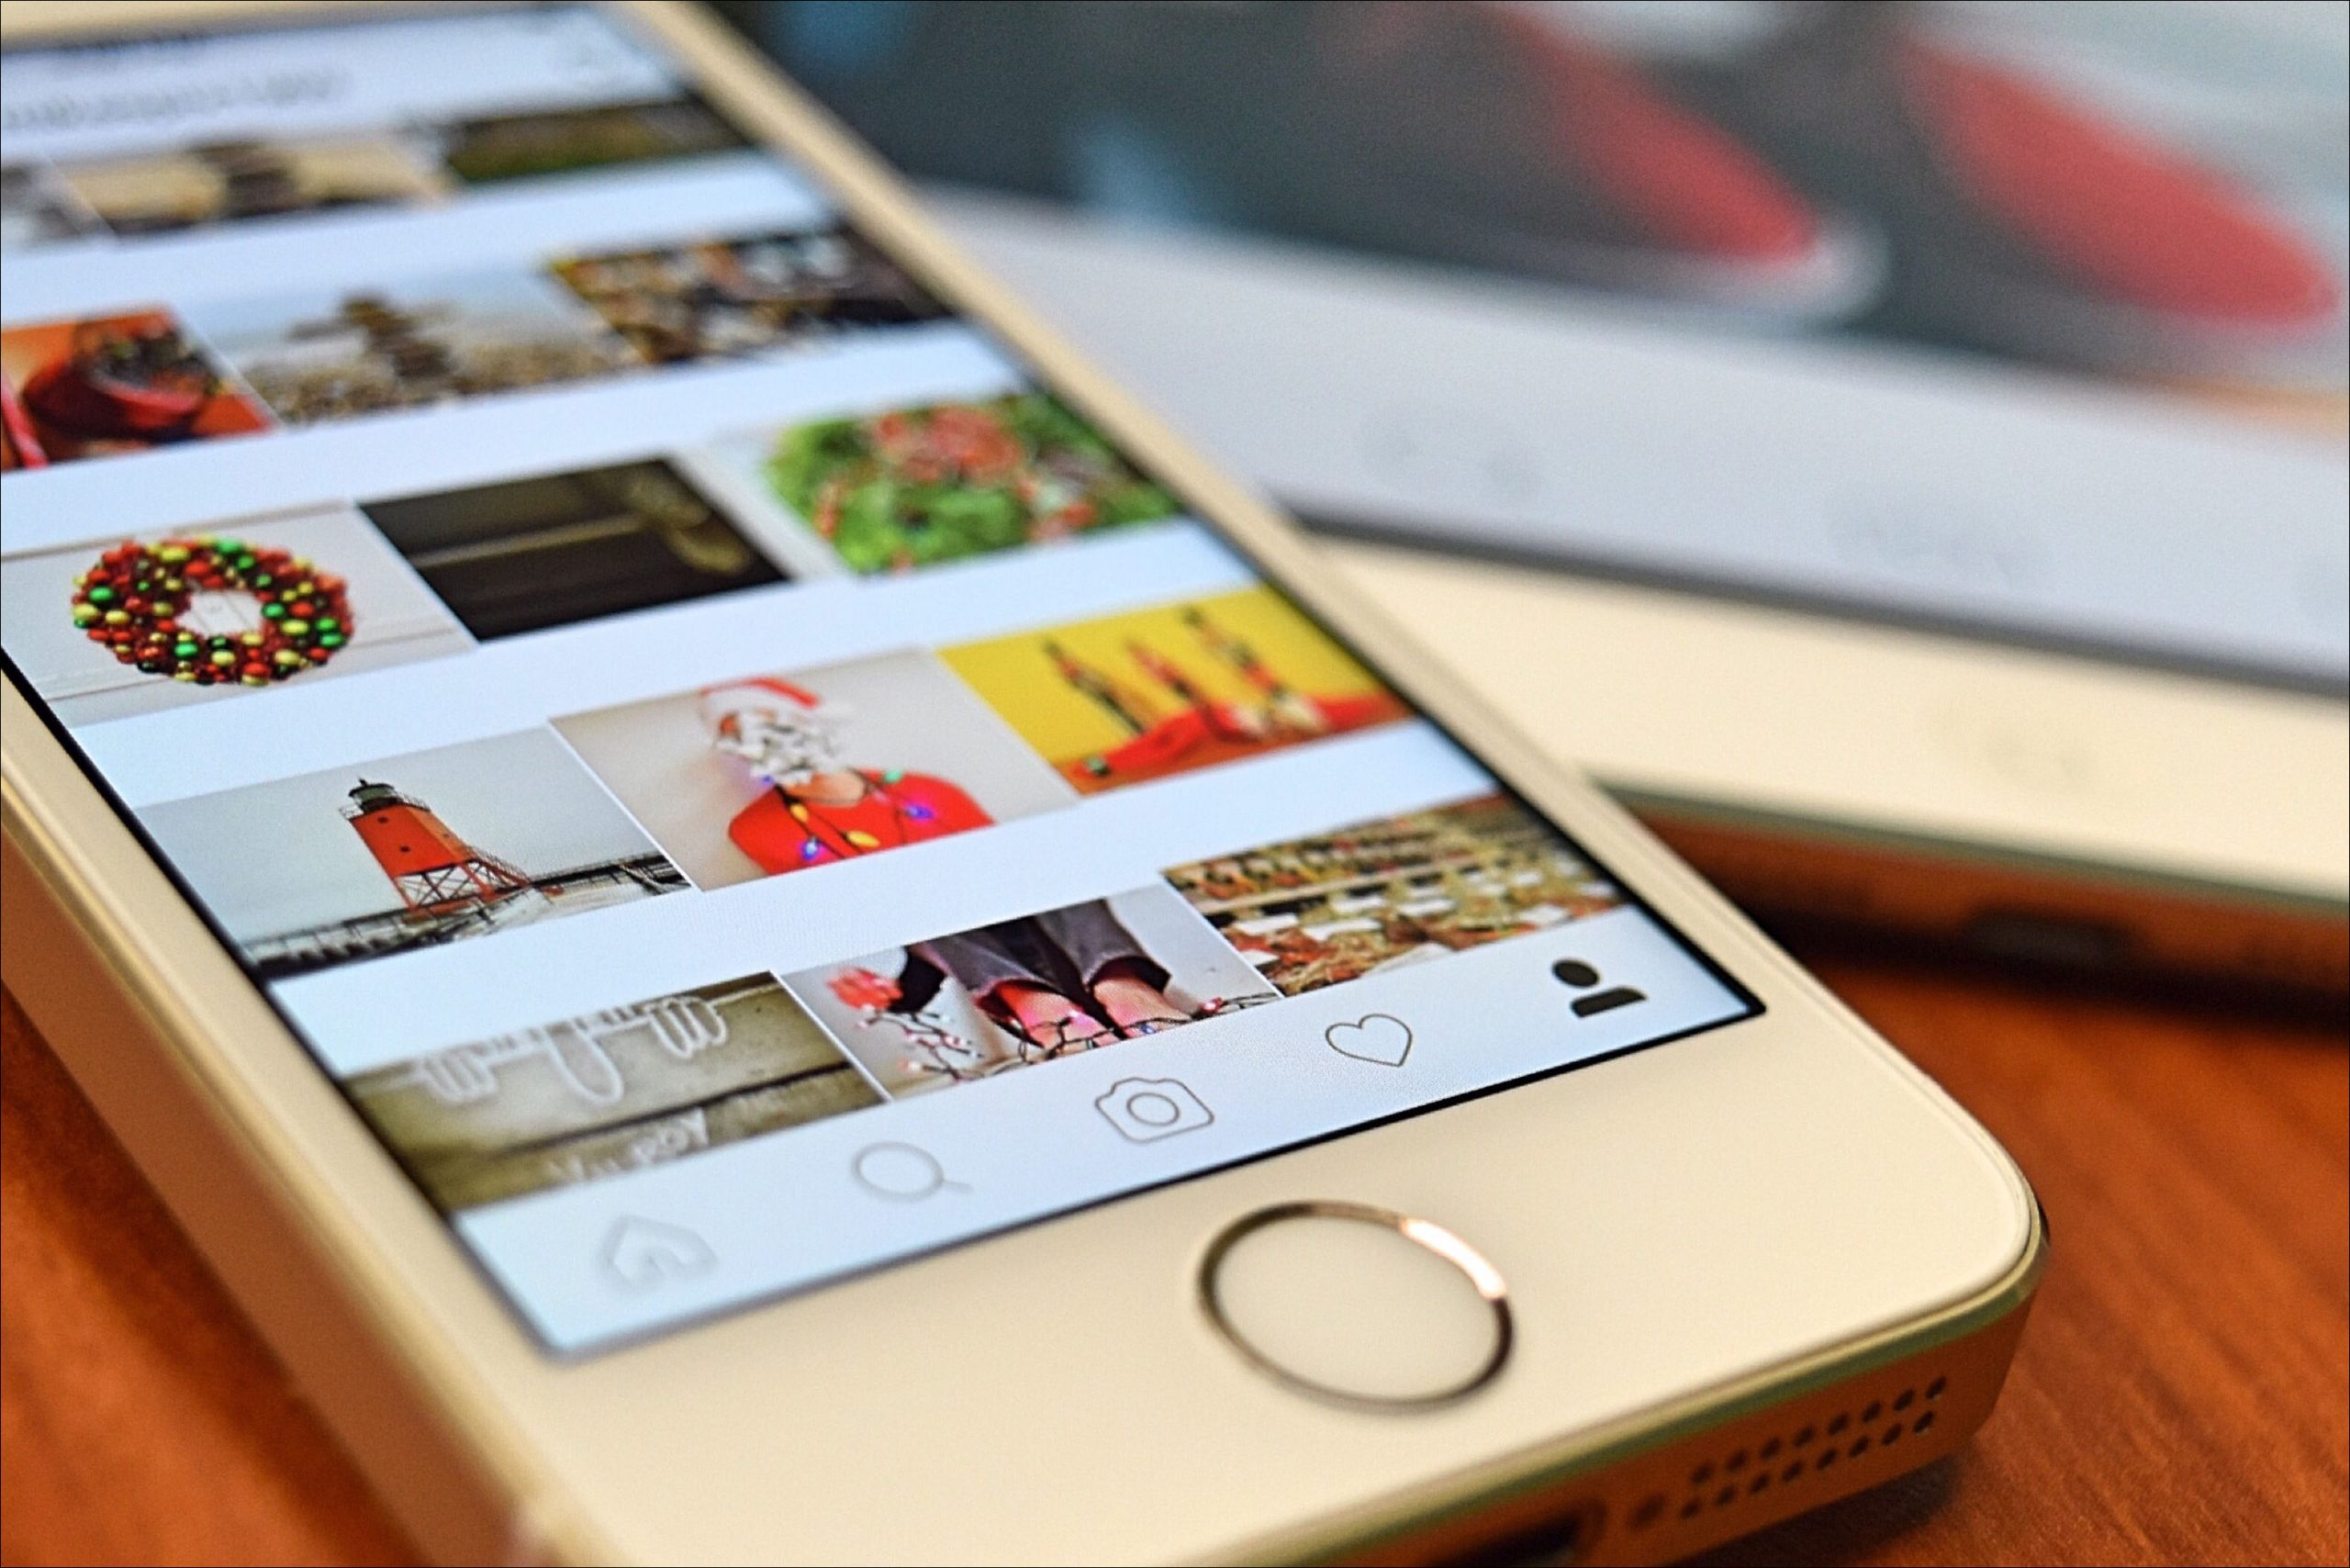 Instagram నుండి మీ అన్ని ఫోటోలను డౌన్‌లోడ్ చేయడం ఎలా